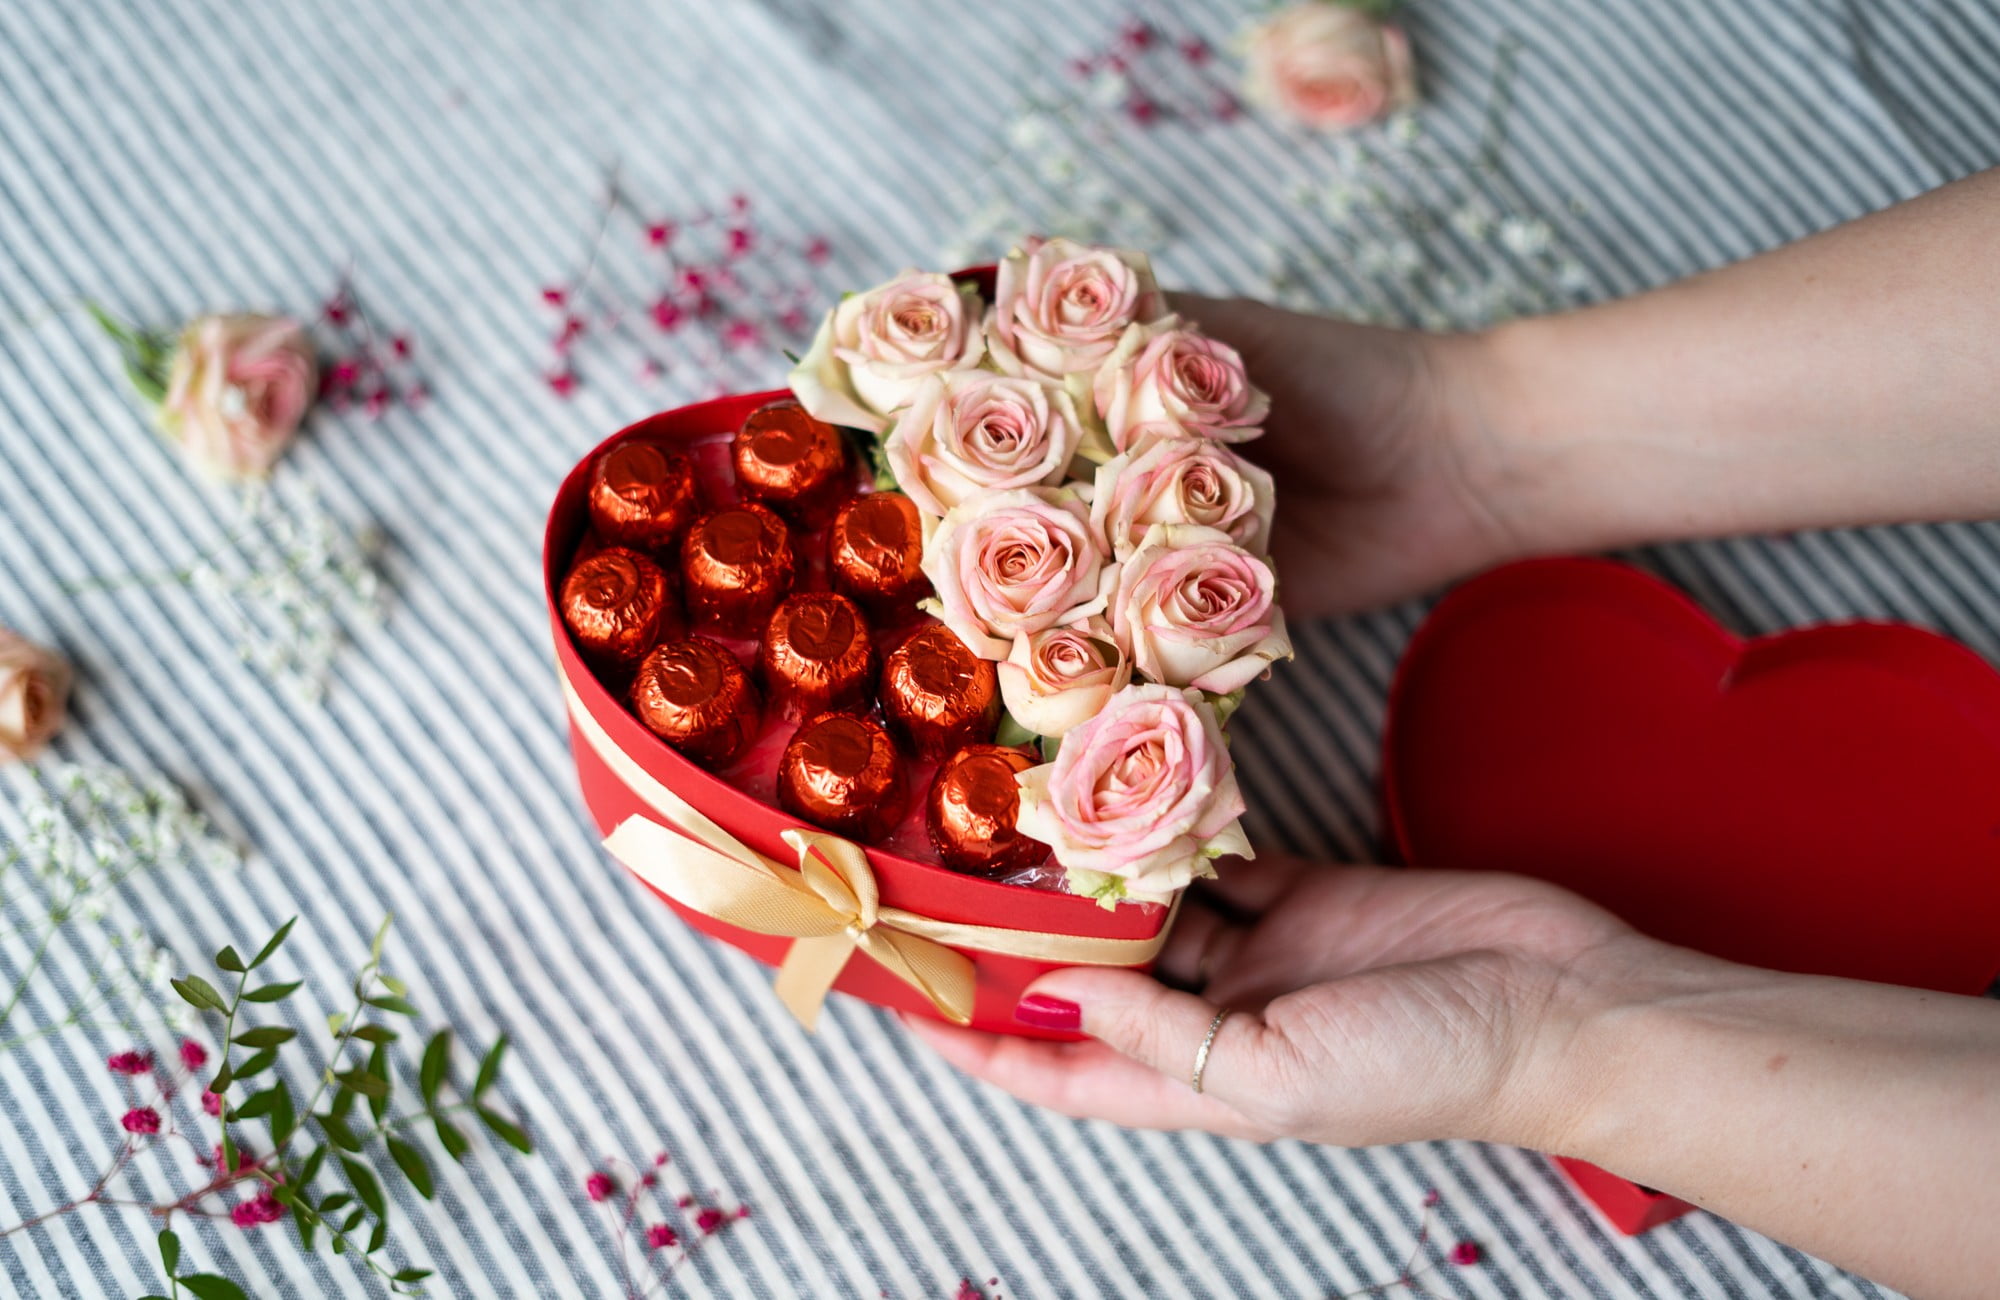 Čokoláda i květiny pohromadě ve tvaru srdce – originální dárek pro maminku.